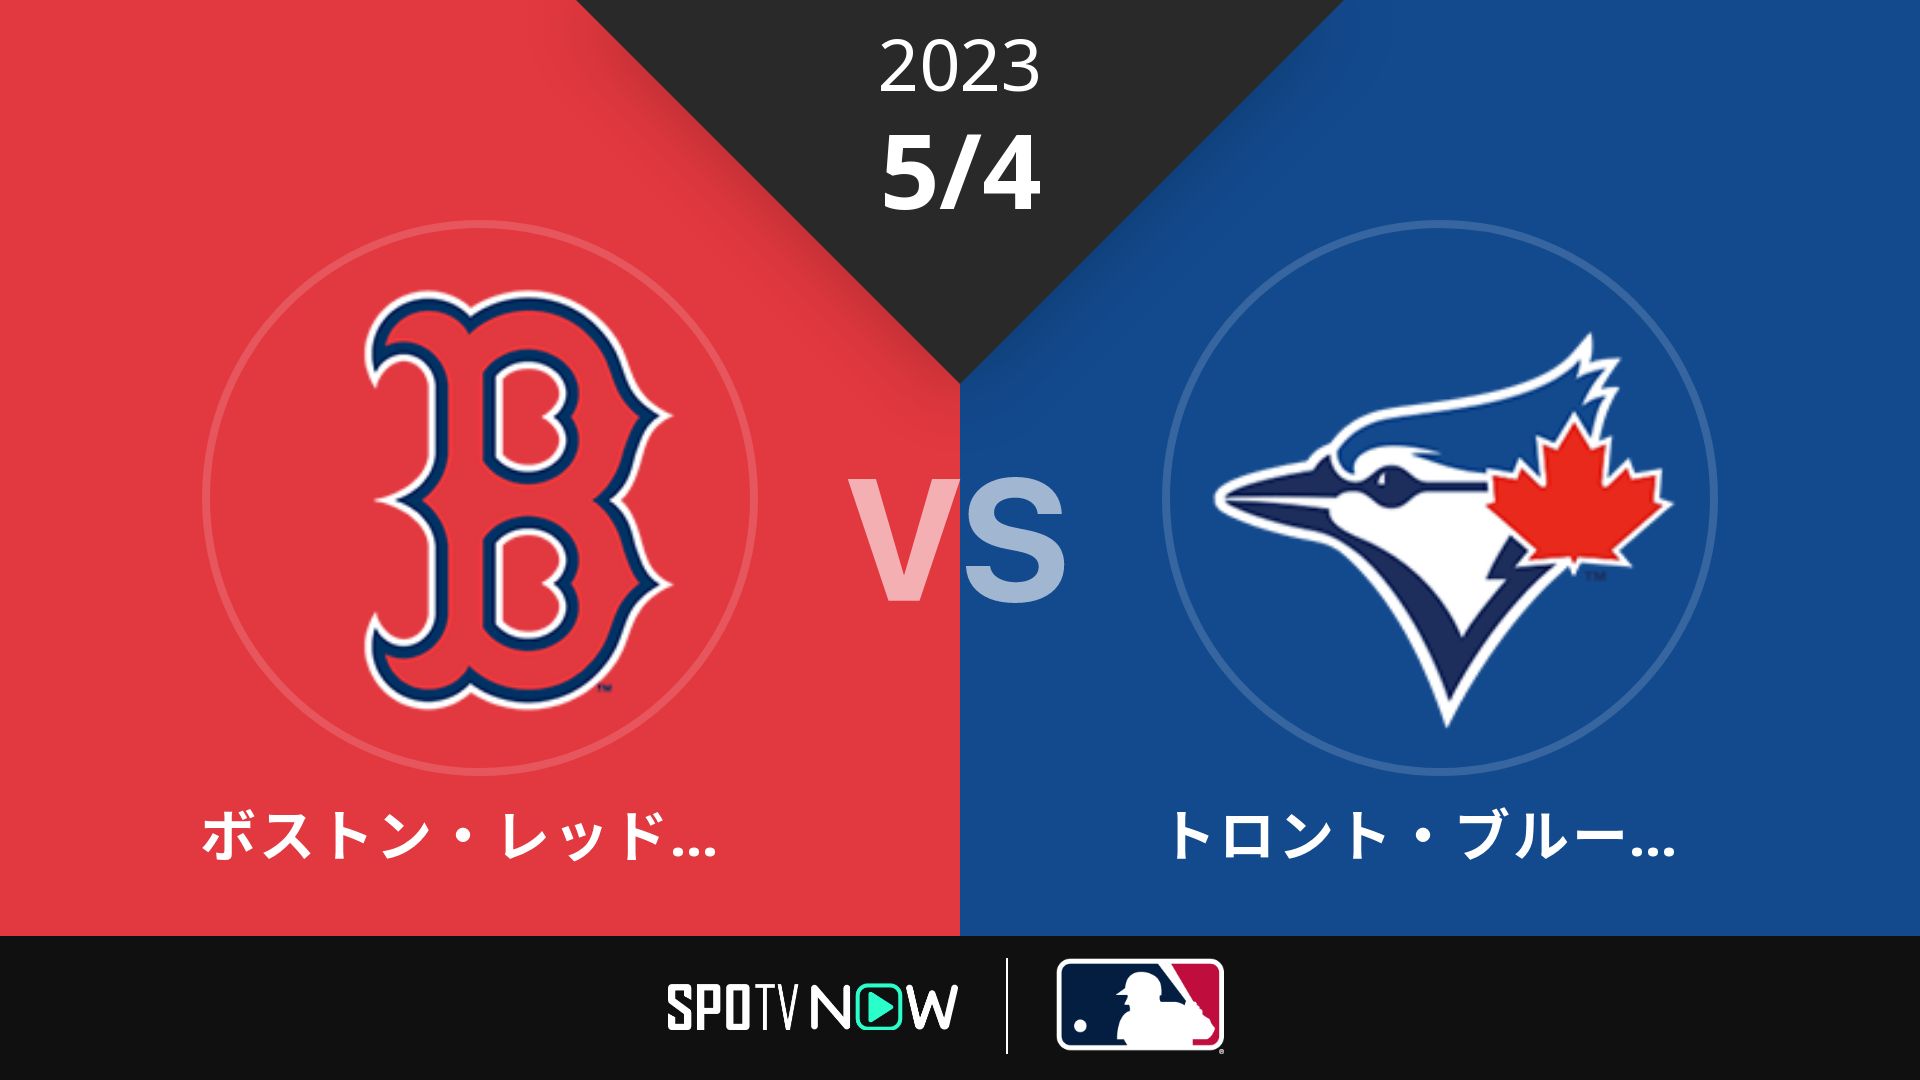 2023/5/4 Rソックス vs ブルージェイズ [MLB]